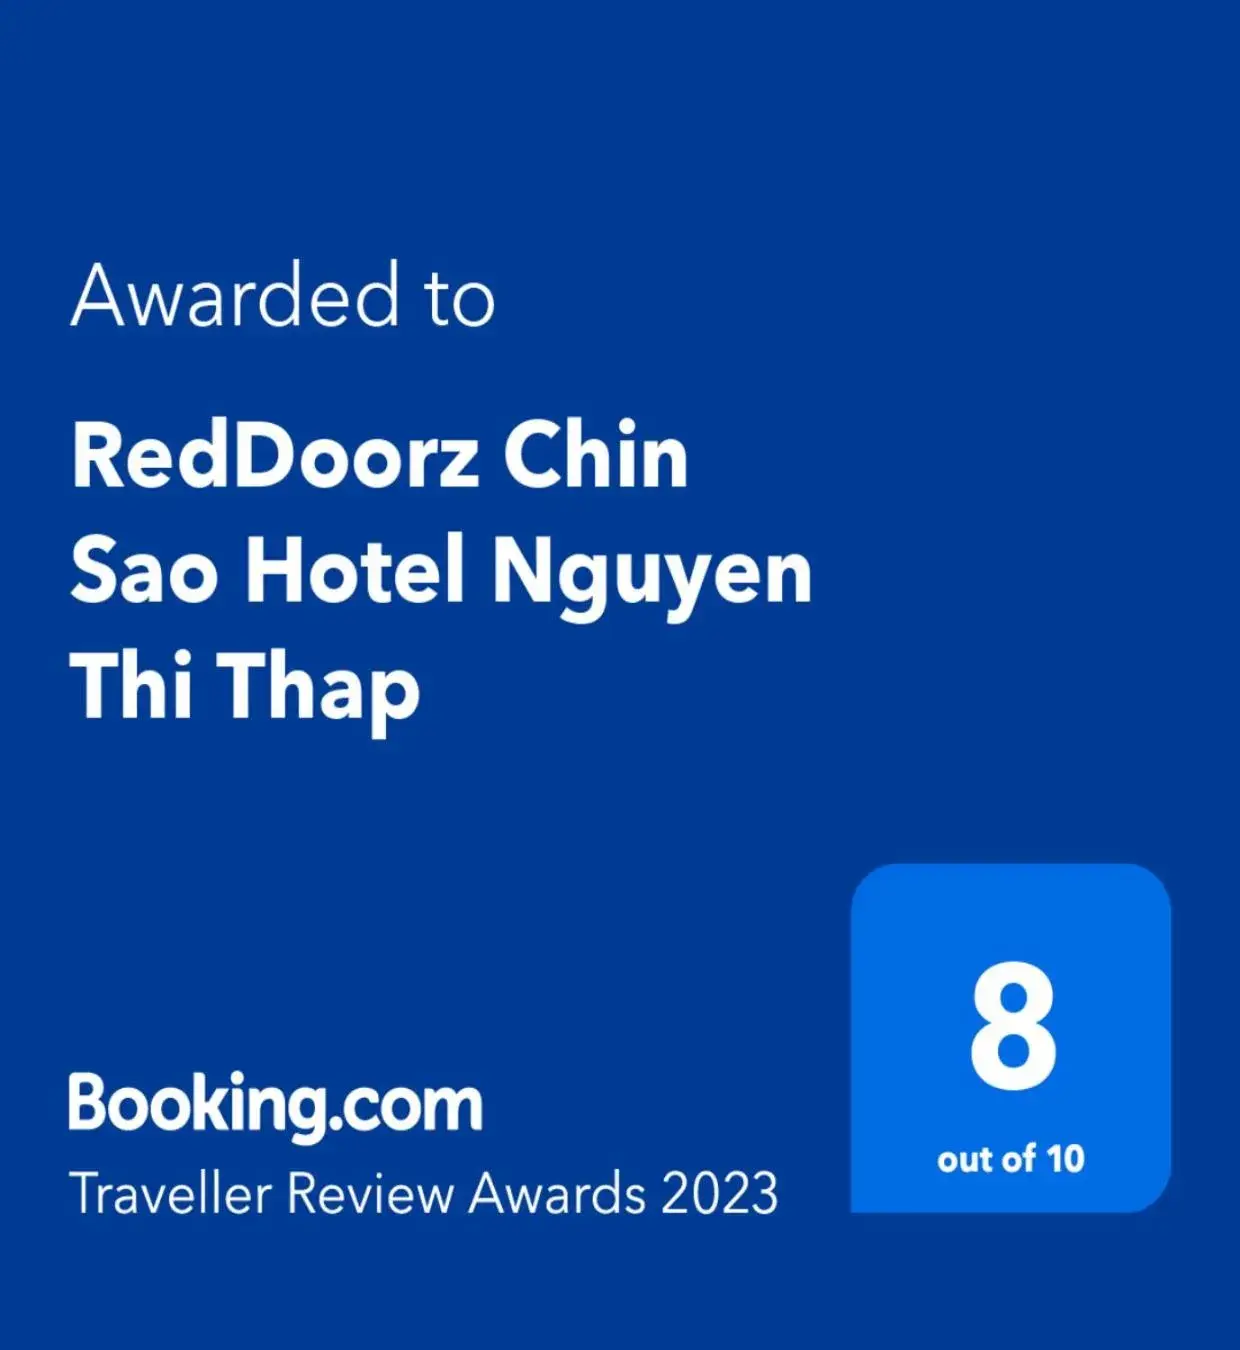 Certificate/Award, Logo/Certificate/Sign/Award in Chin Sao Hotel Nguyen Thi Thap